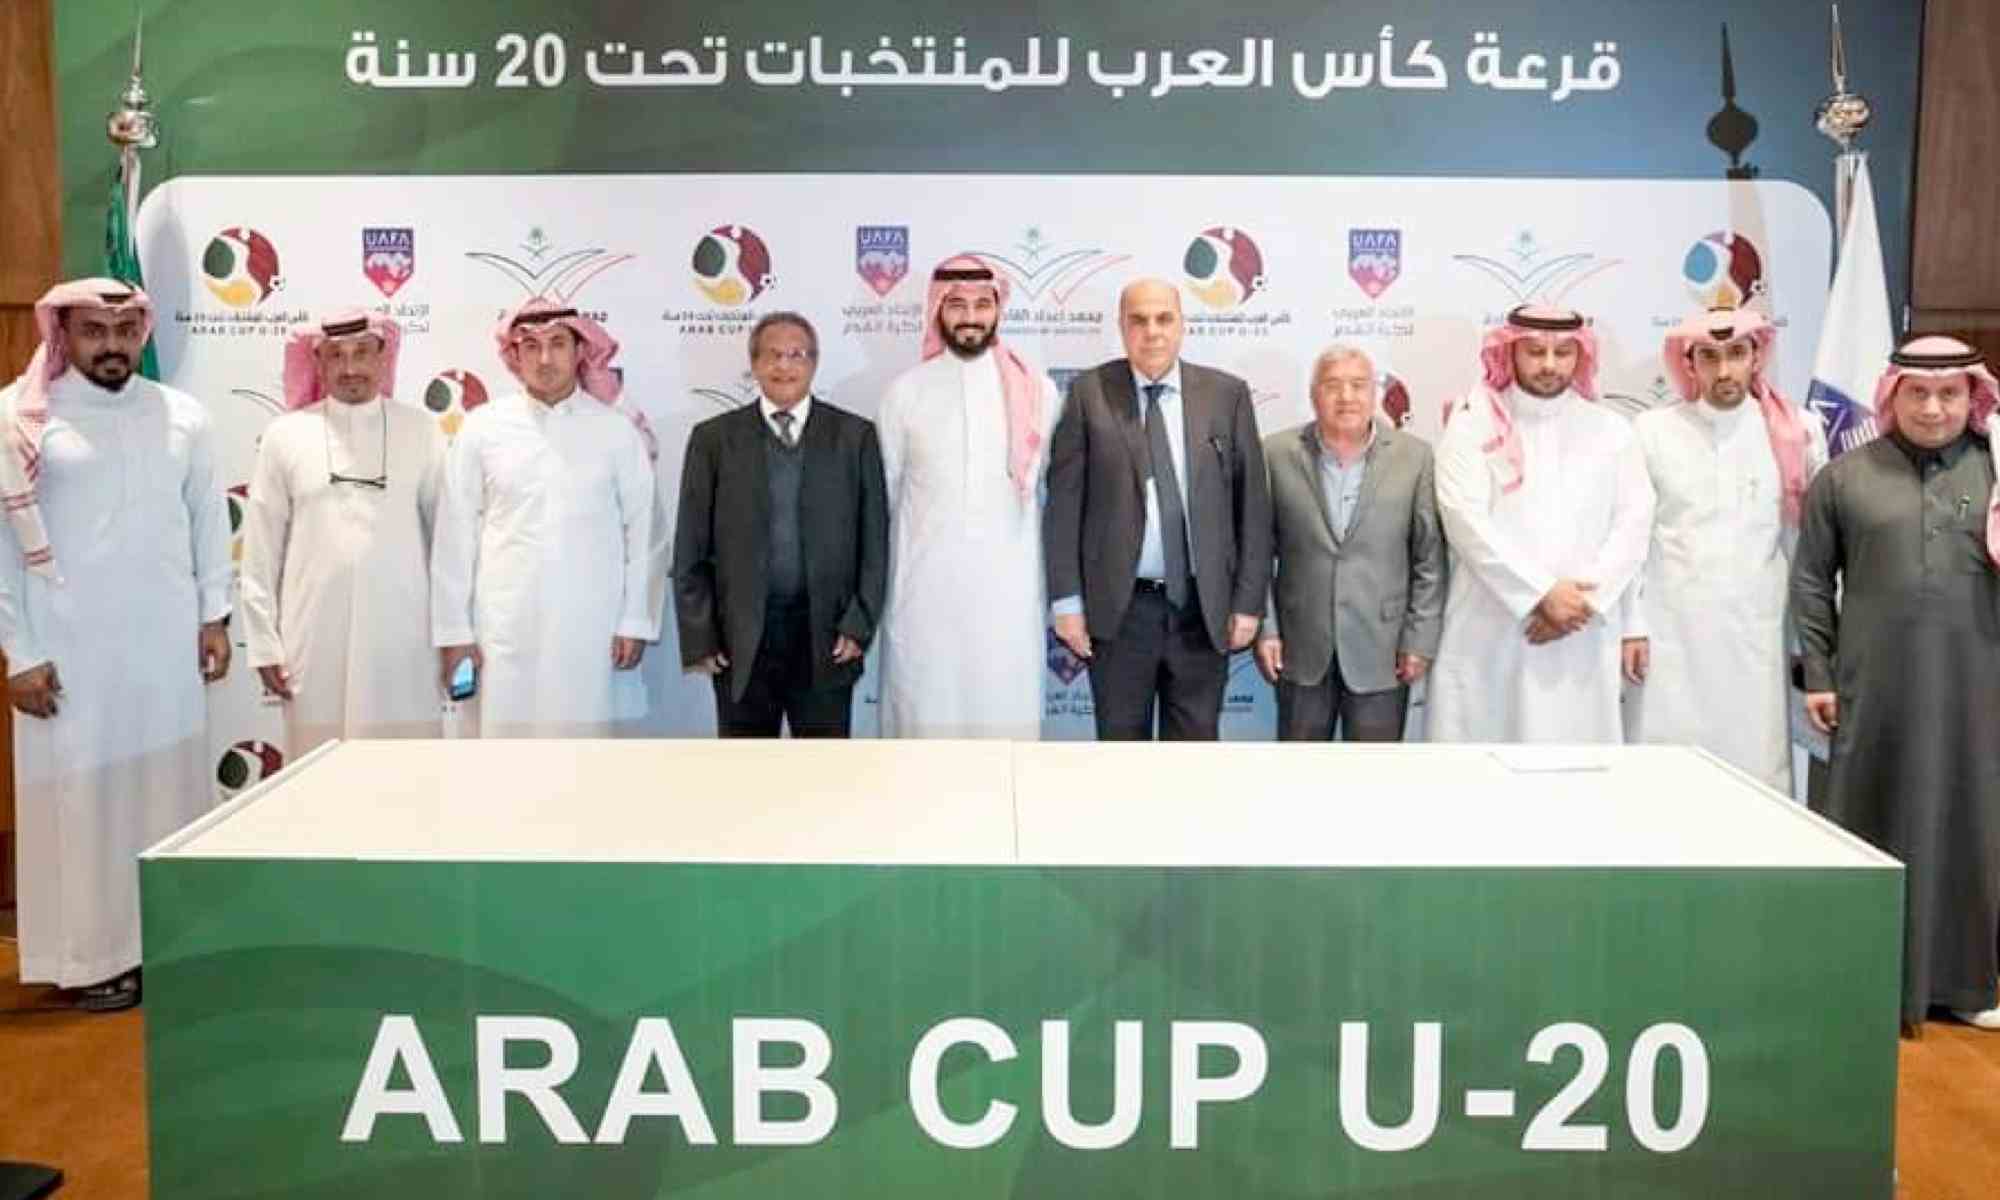 tournoi arabe cup U20 raouraoua